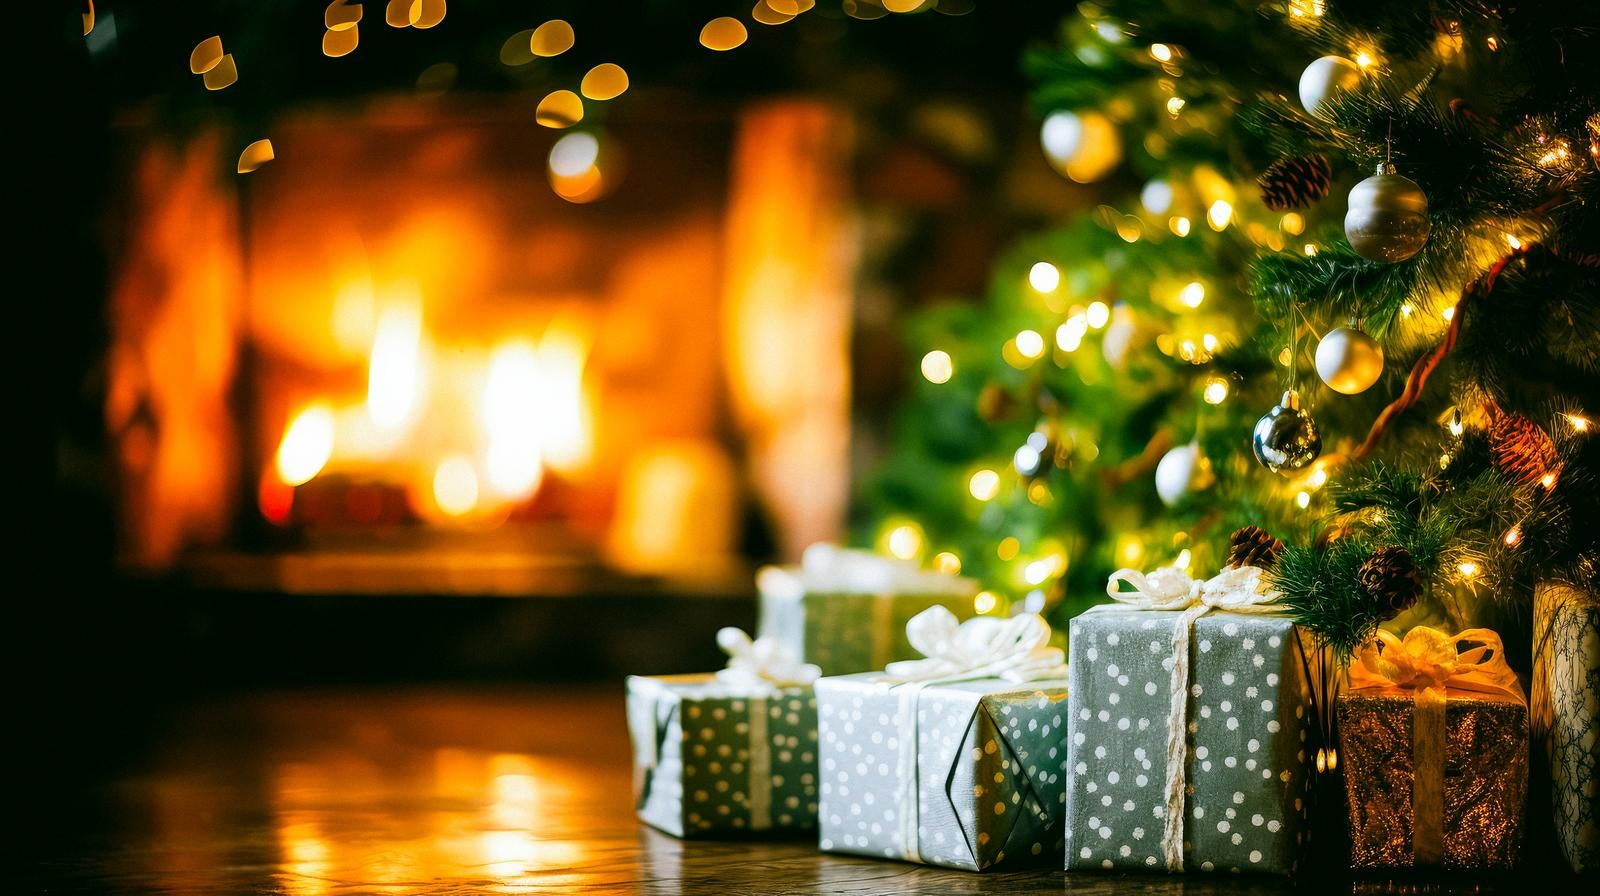 「クリスマスプレゼントと暖炉のある家」の写真